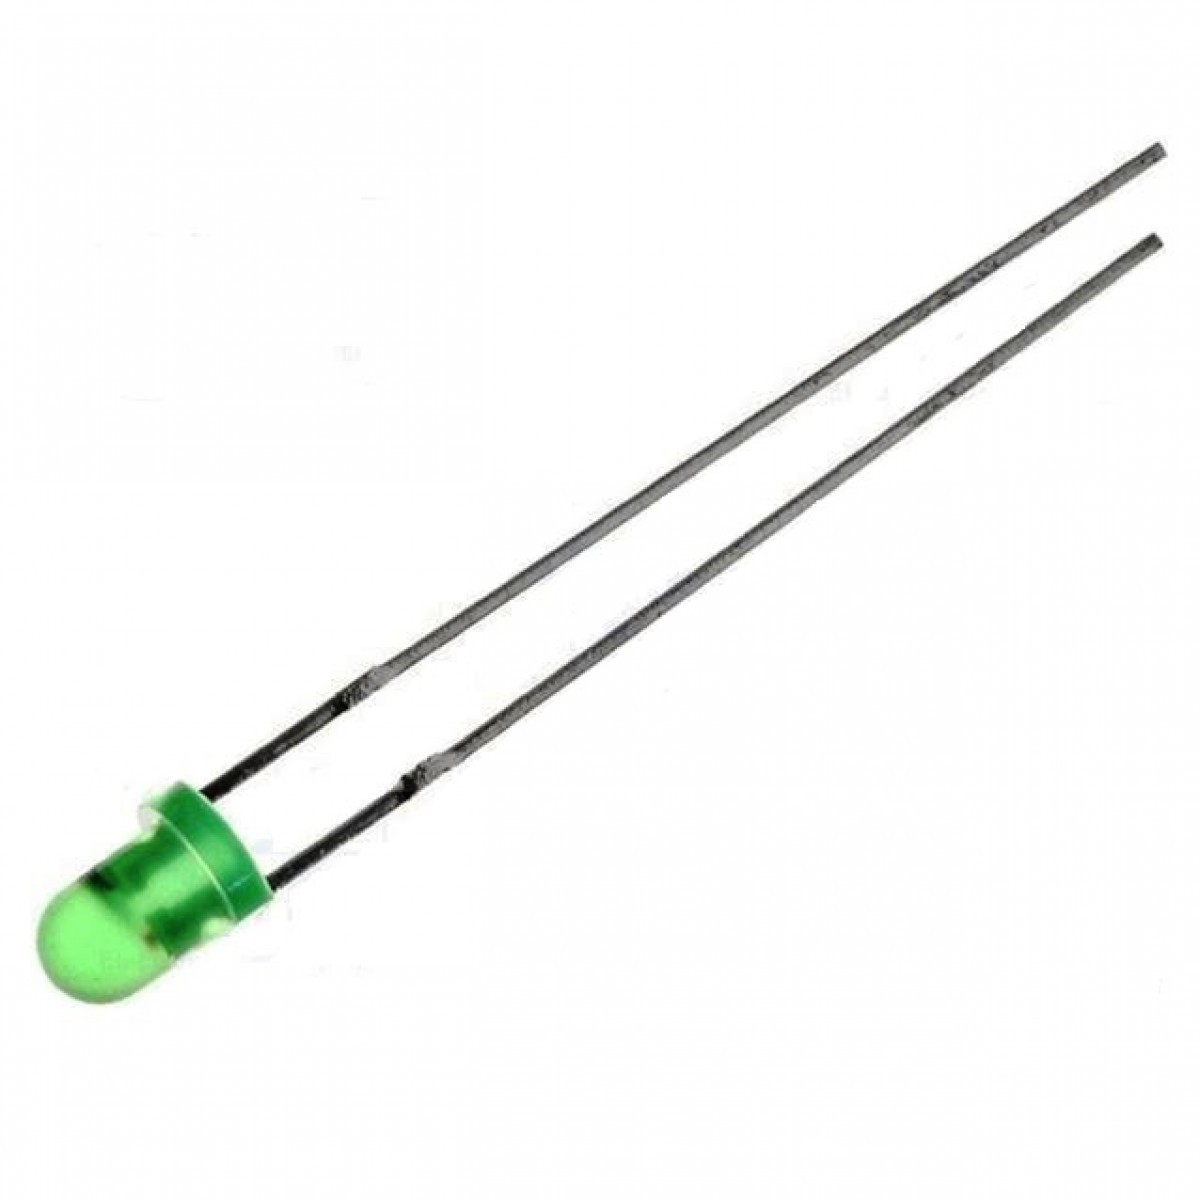 светодиод 3mm зеленый диффузионный мигающий